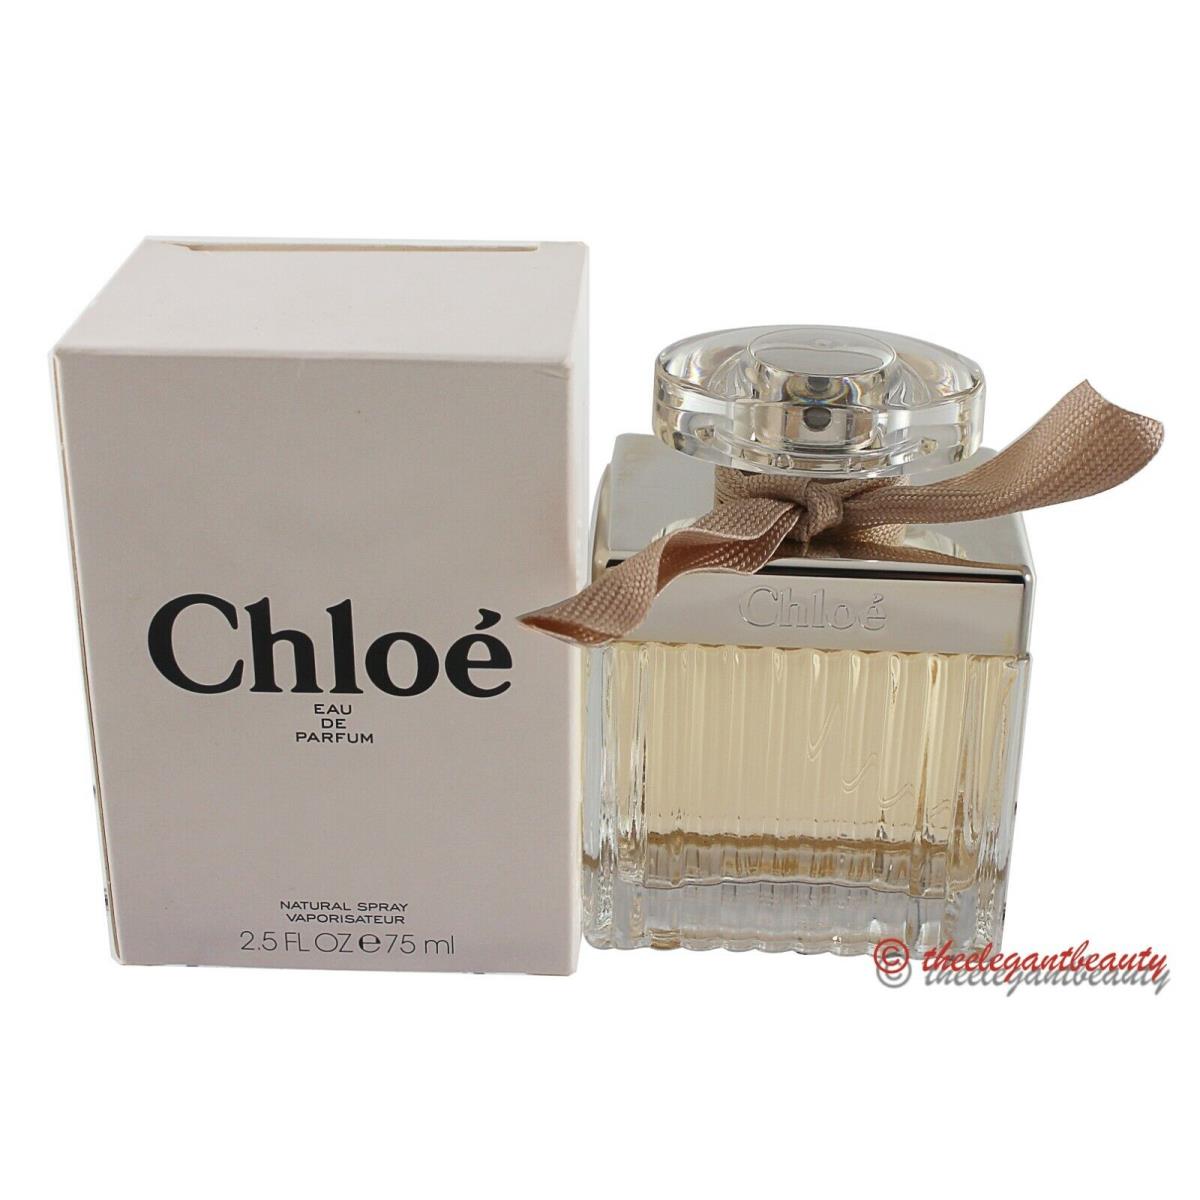 Chloe By Chloe For Women Eau De Parfum Spray 2.5oz/ 75ml